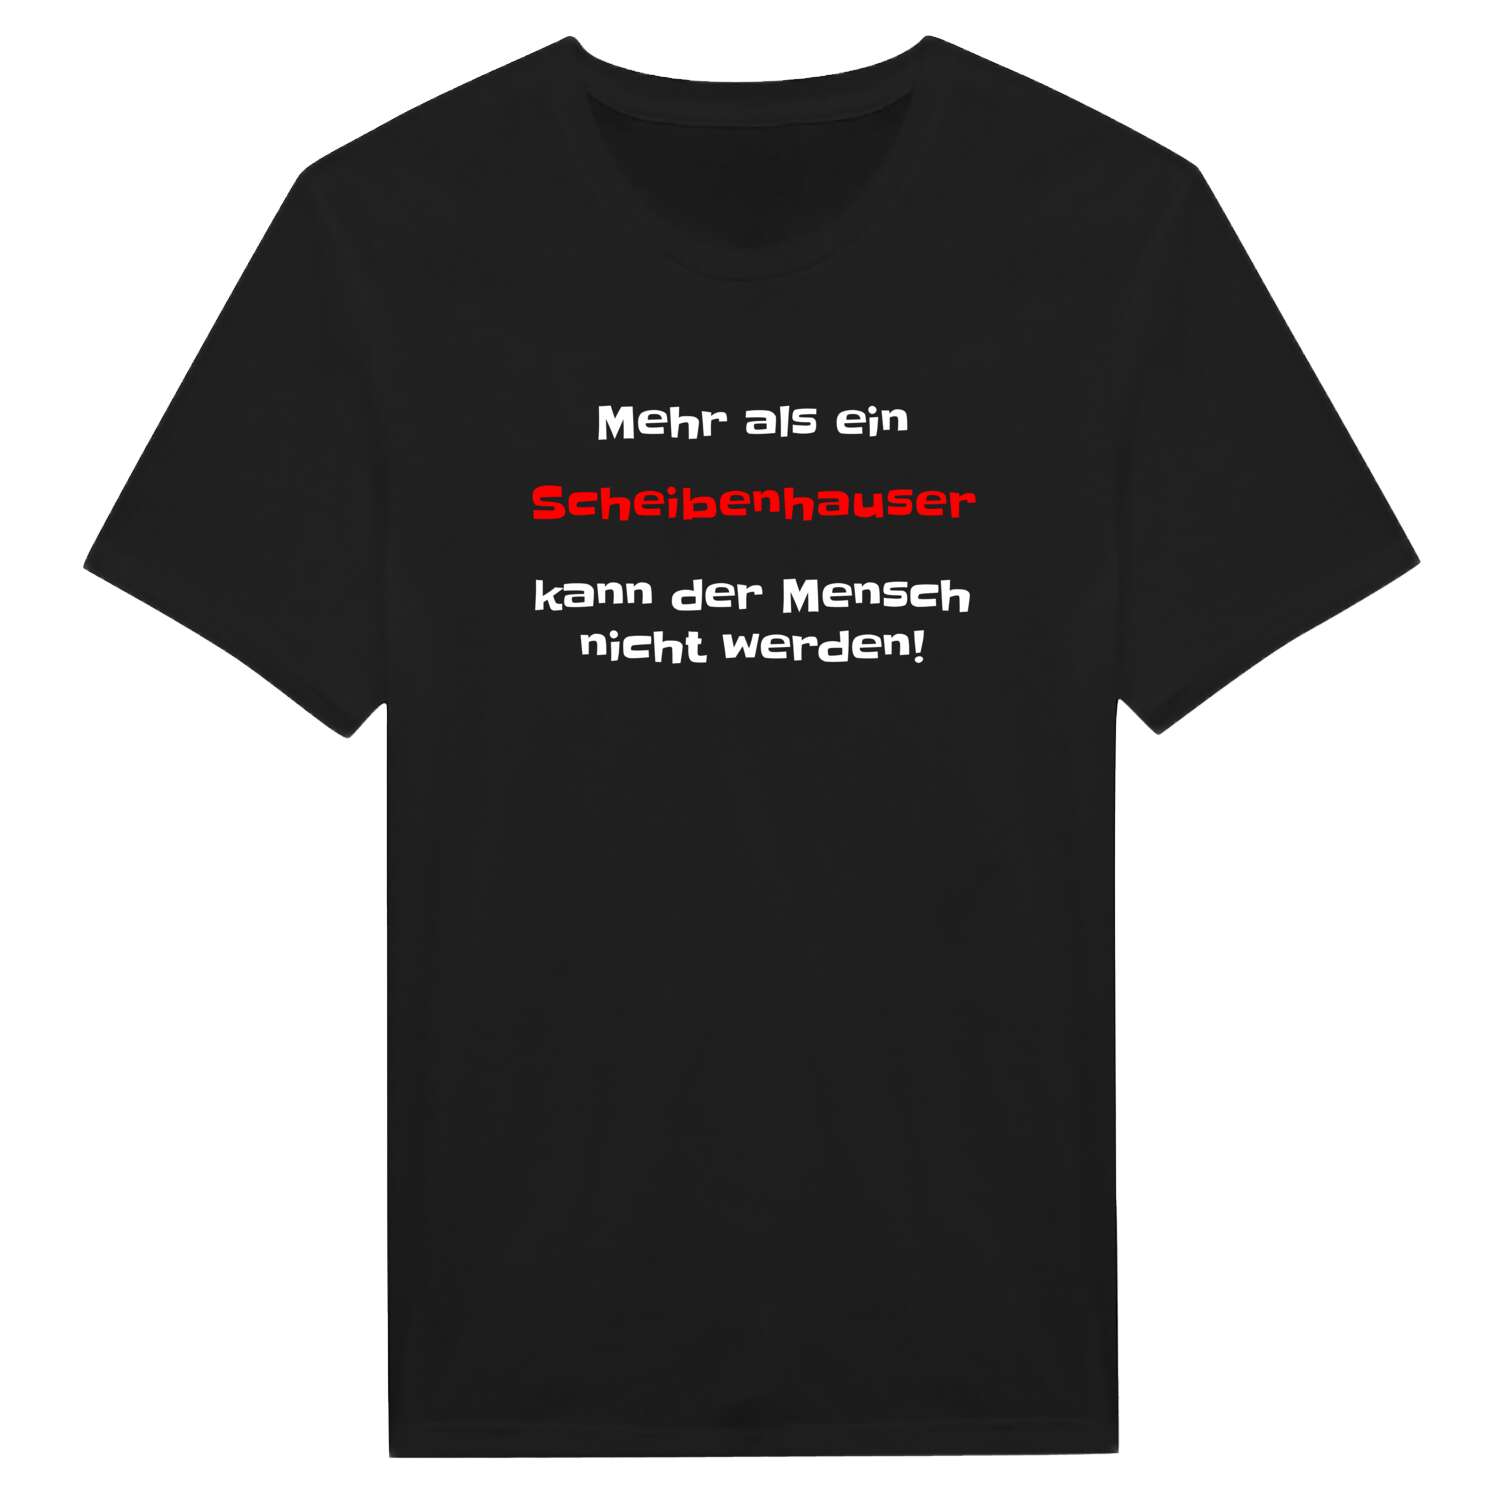 Scheibenhaus T-Shirt »Mehr als ein«